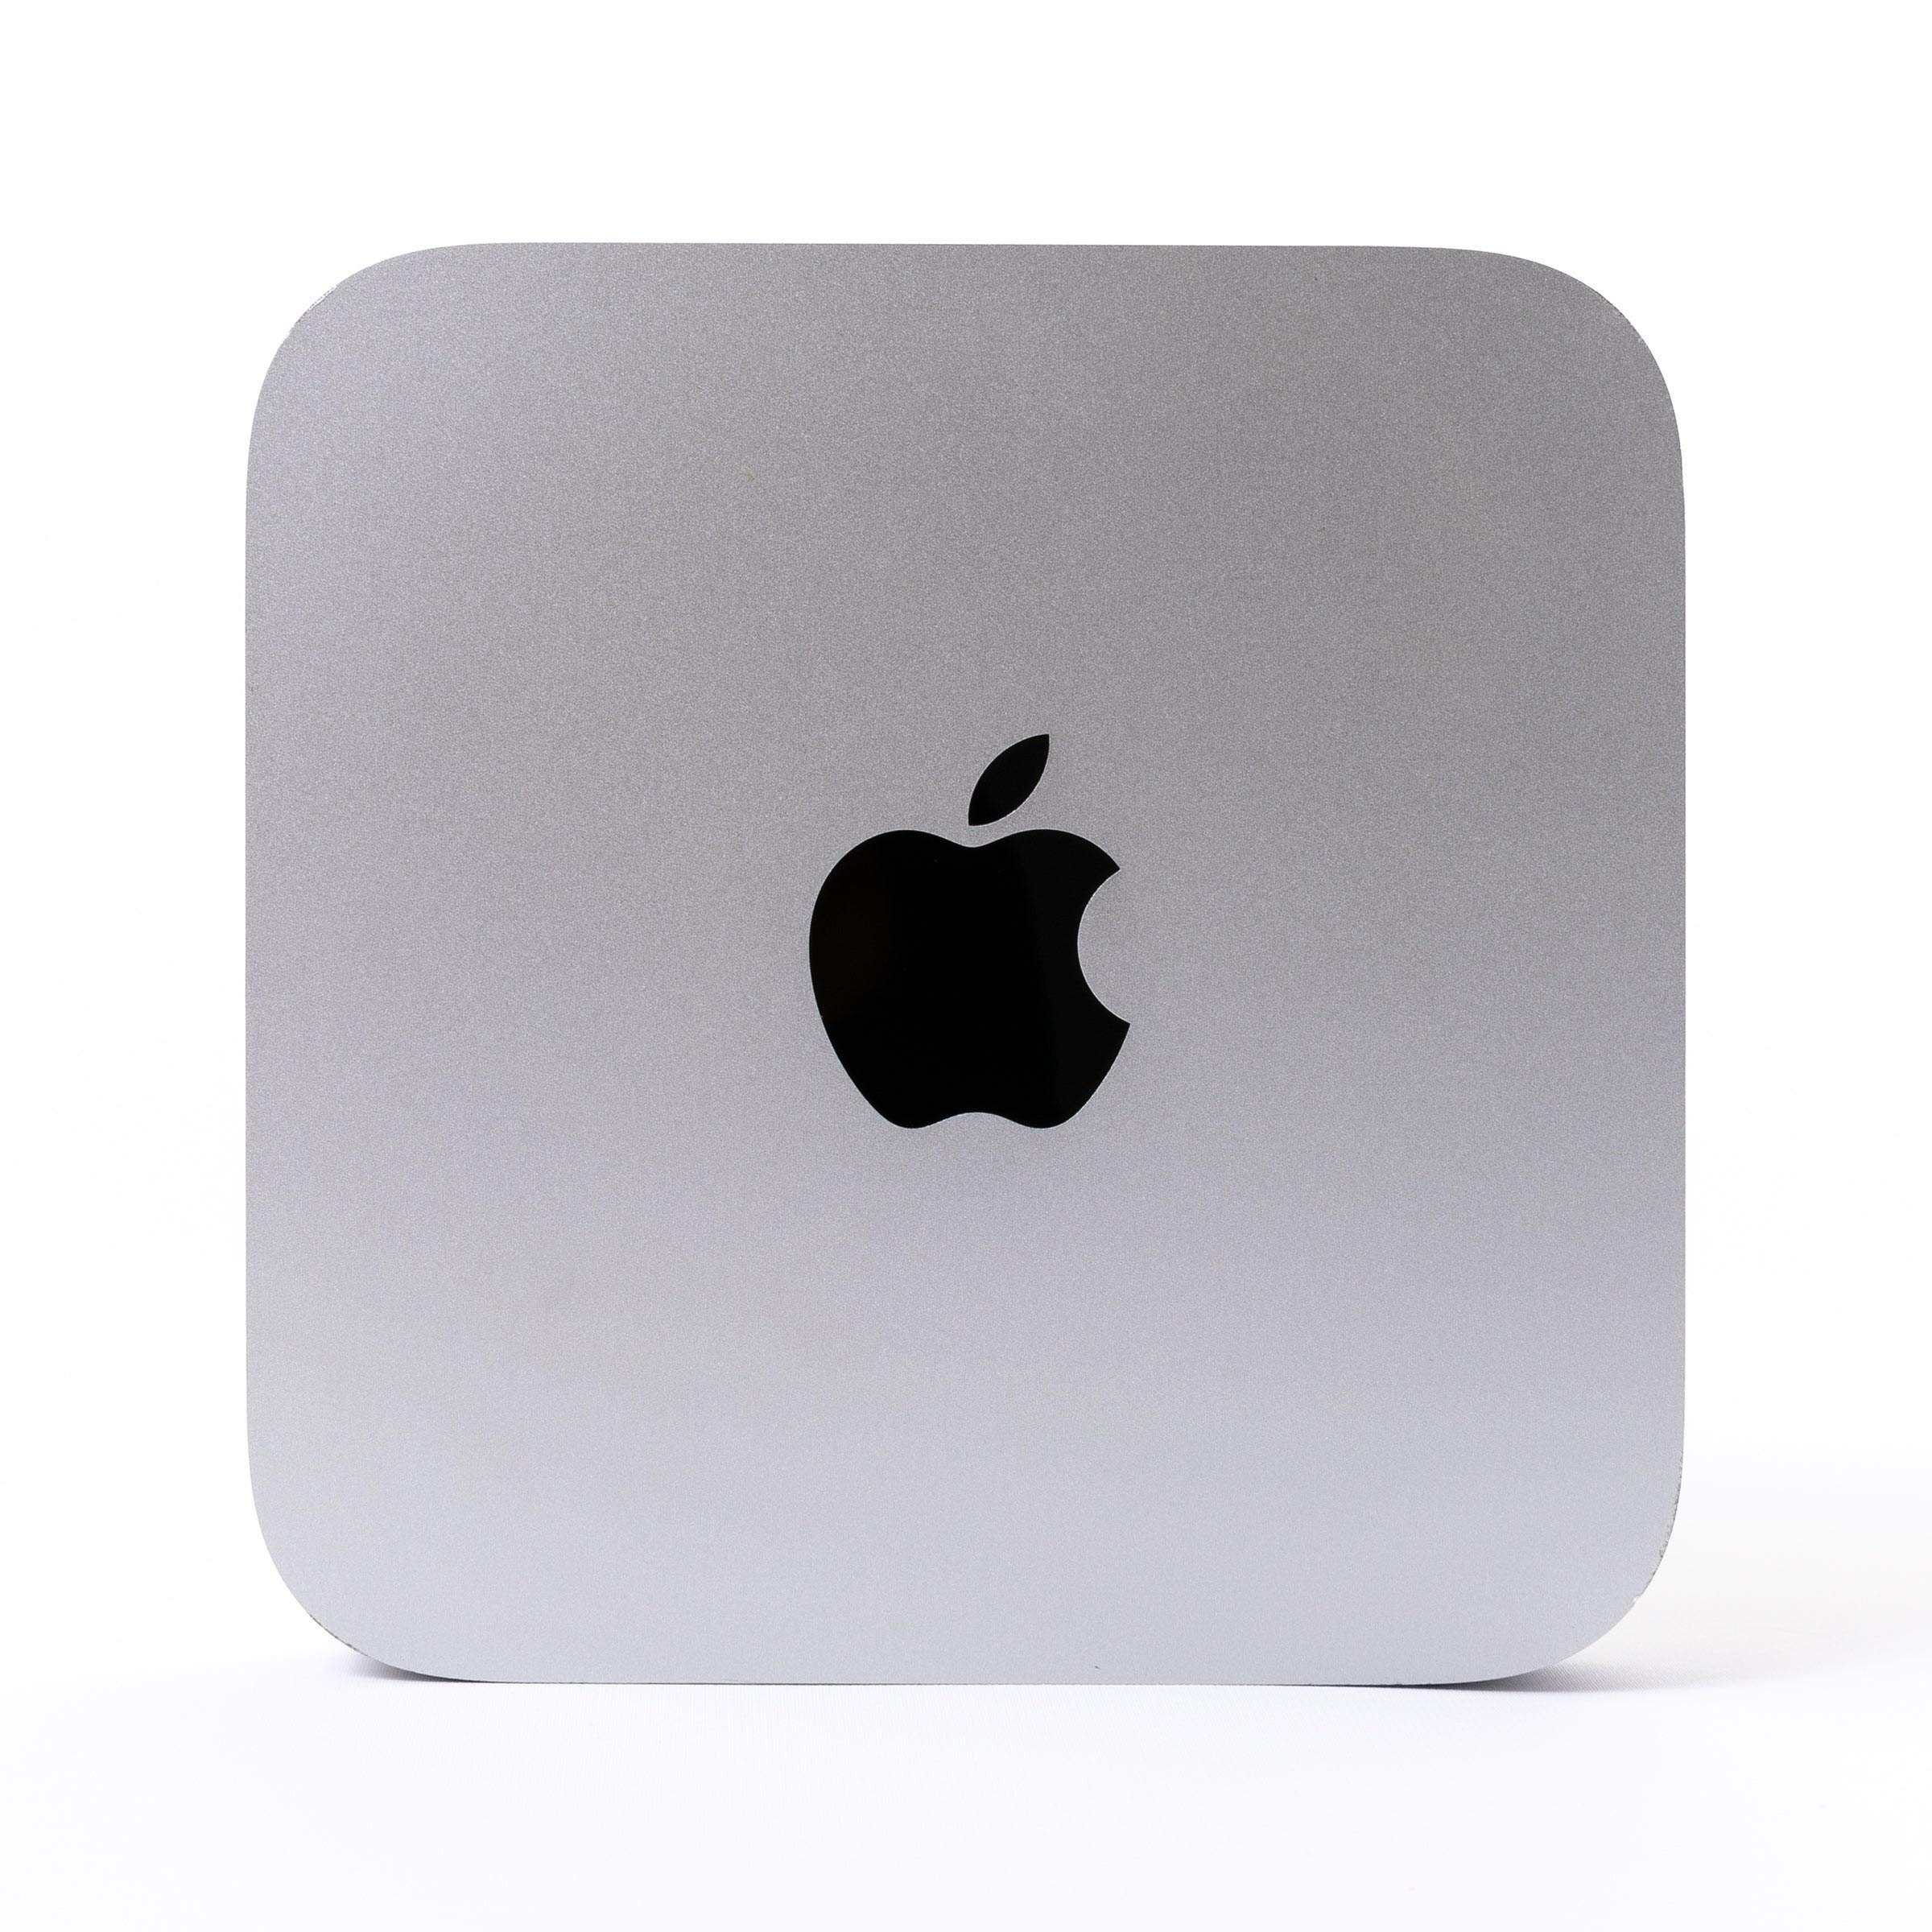 Apple Mac Mini Desktop MD388LL/A, 2.3GHz Intel Core i7, 4GB RAM, 500GB HDD, Silver (Renewed)